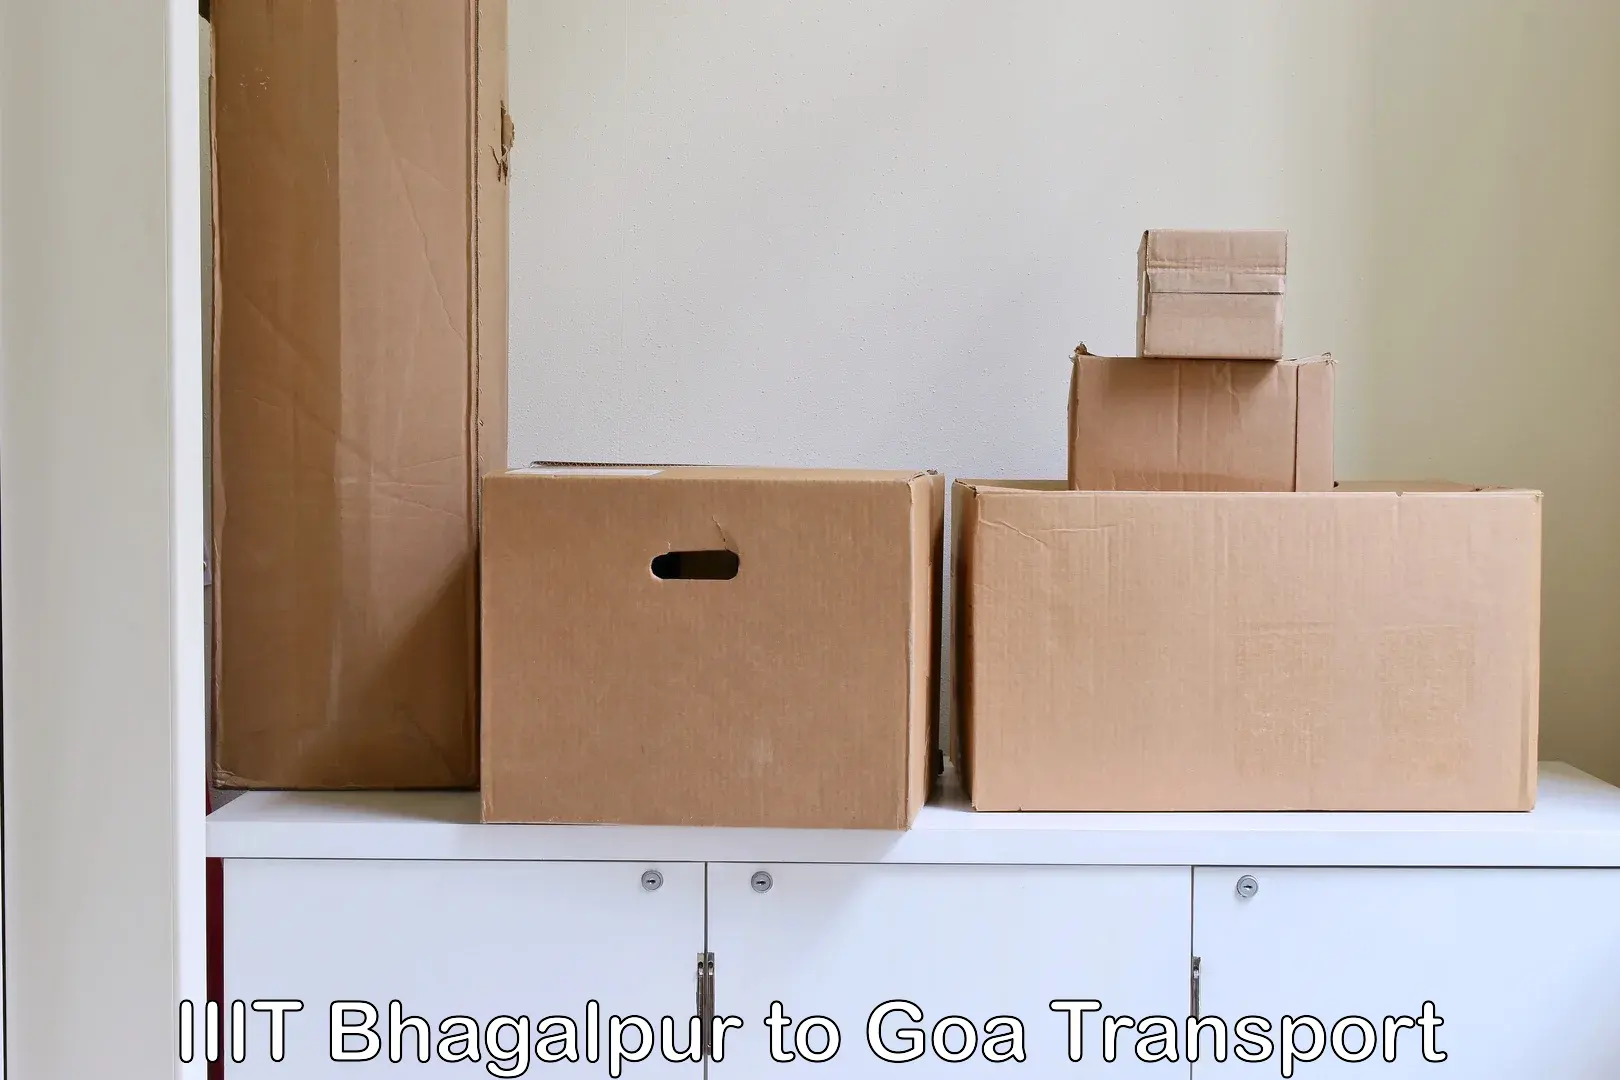 Goods transport services IIIT Bhagalpur to IIT Goa